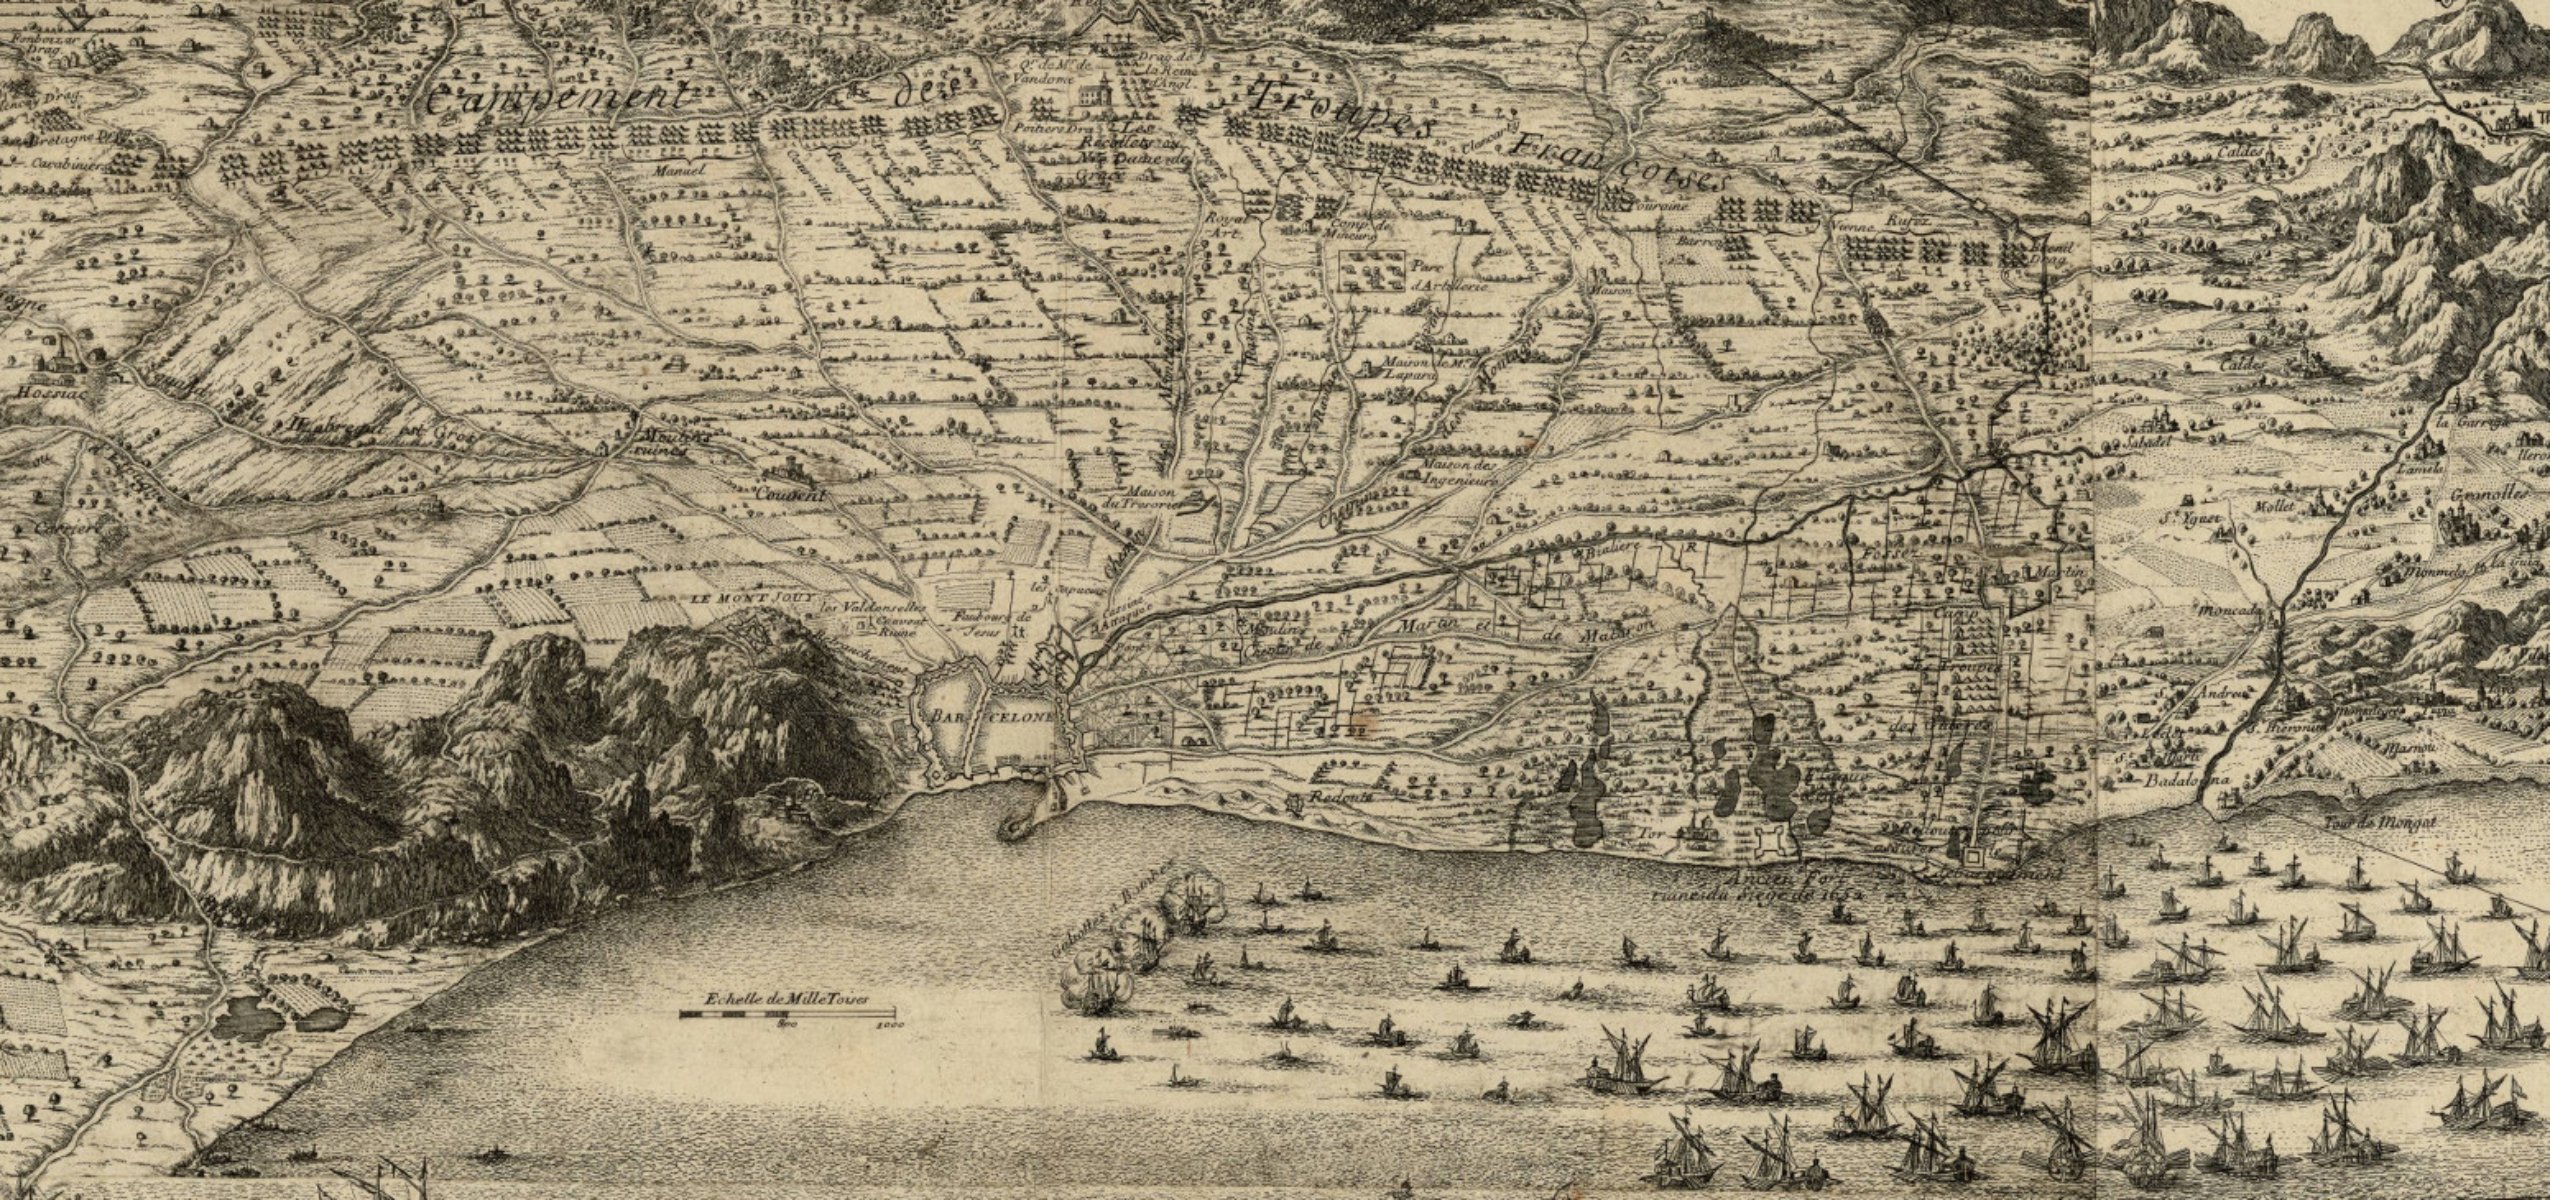 Dibujo de la línea de la costa y del plan|plano de Barcelona (1698). Fuente Cartoteca de Catalunya